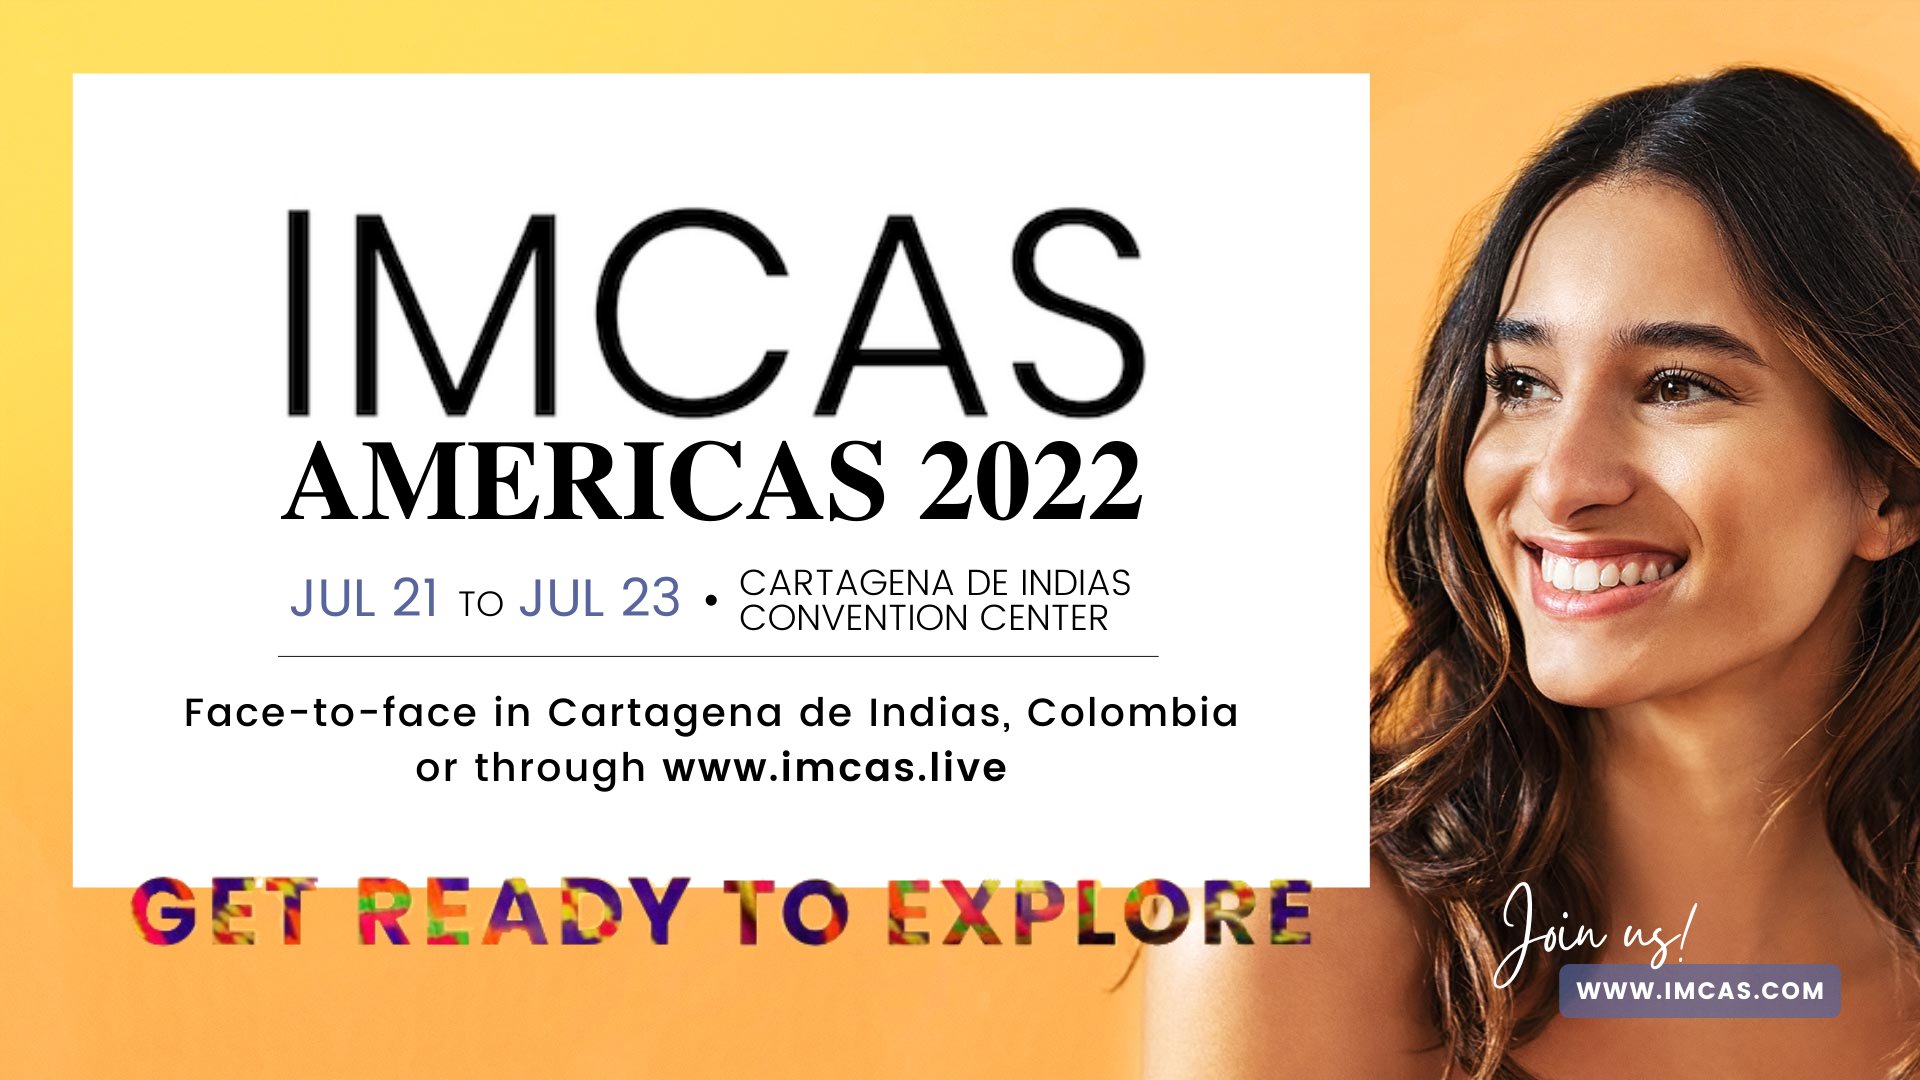 IMCAS Americas 2022 Centro de Convenciones Cartagena de Indias